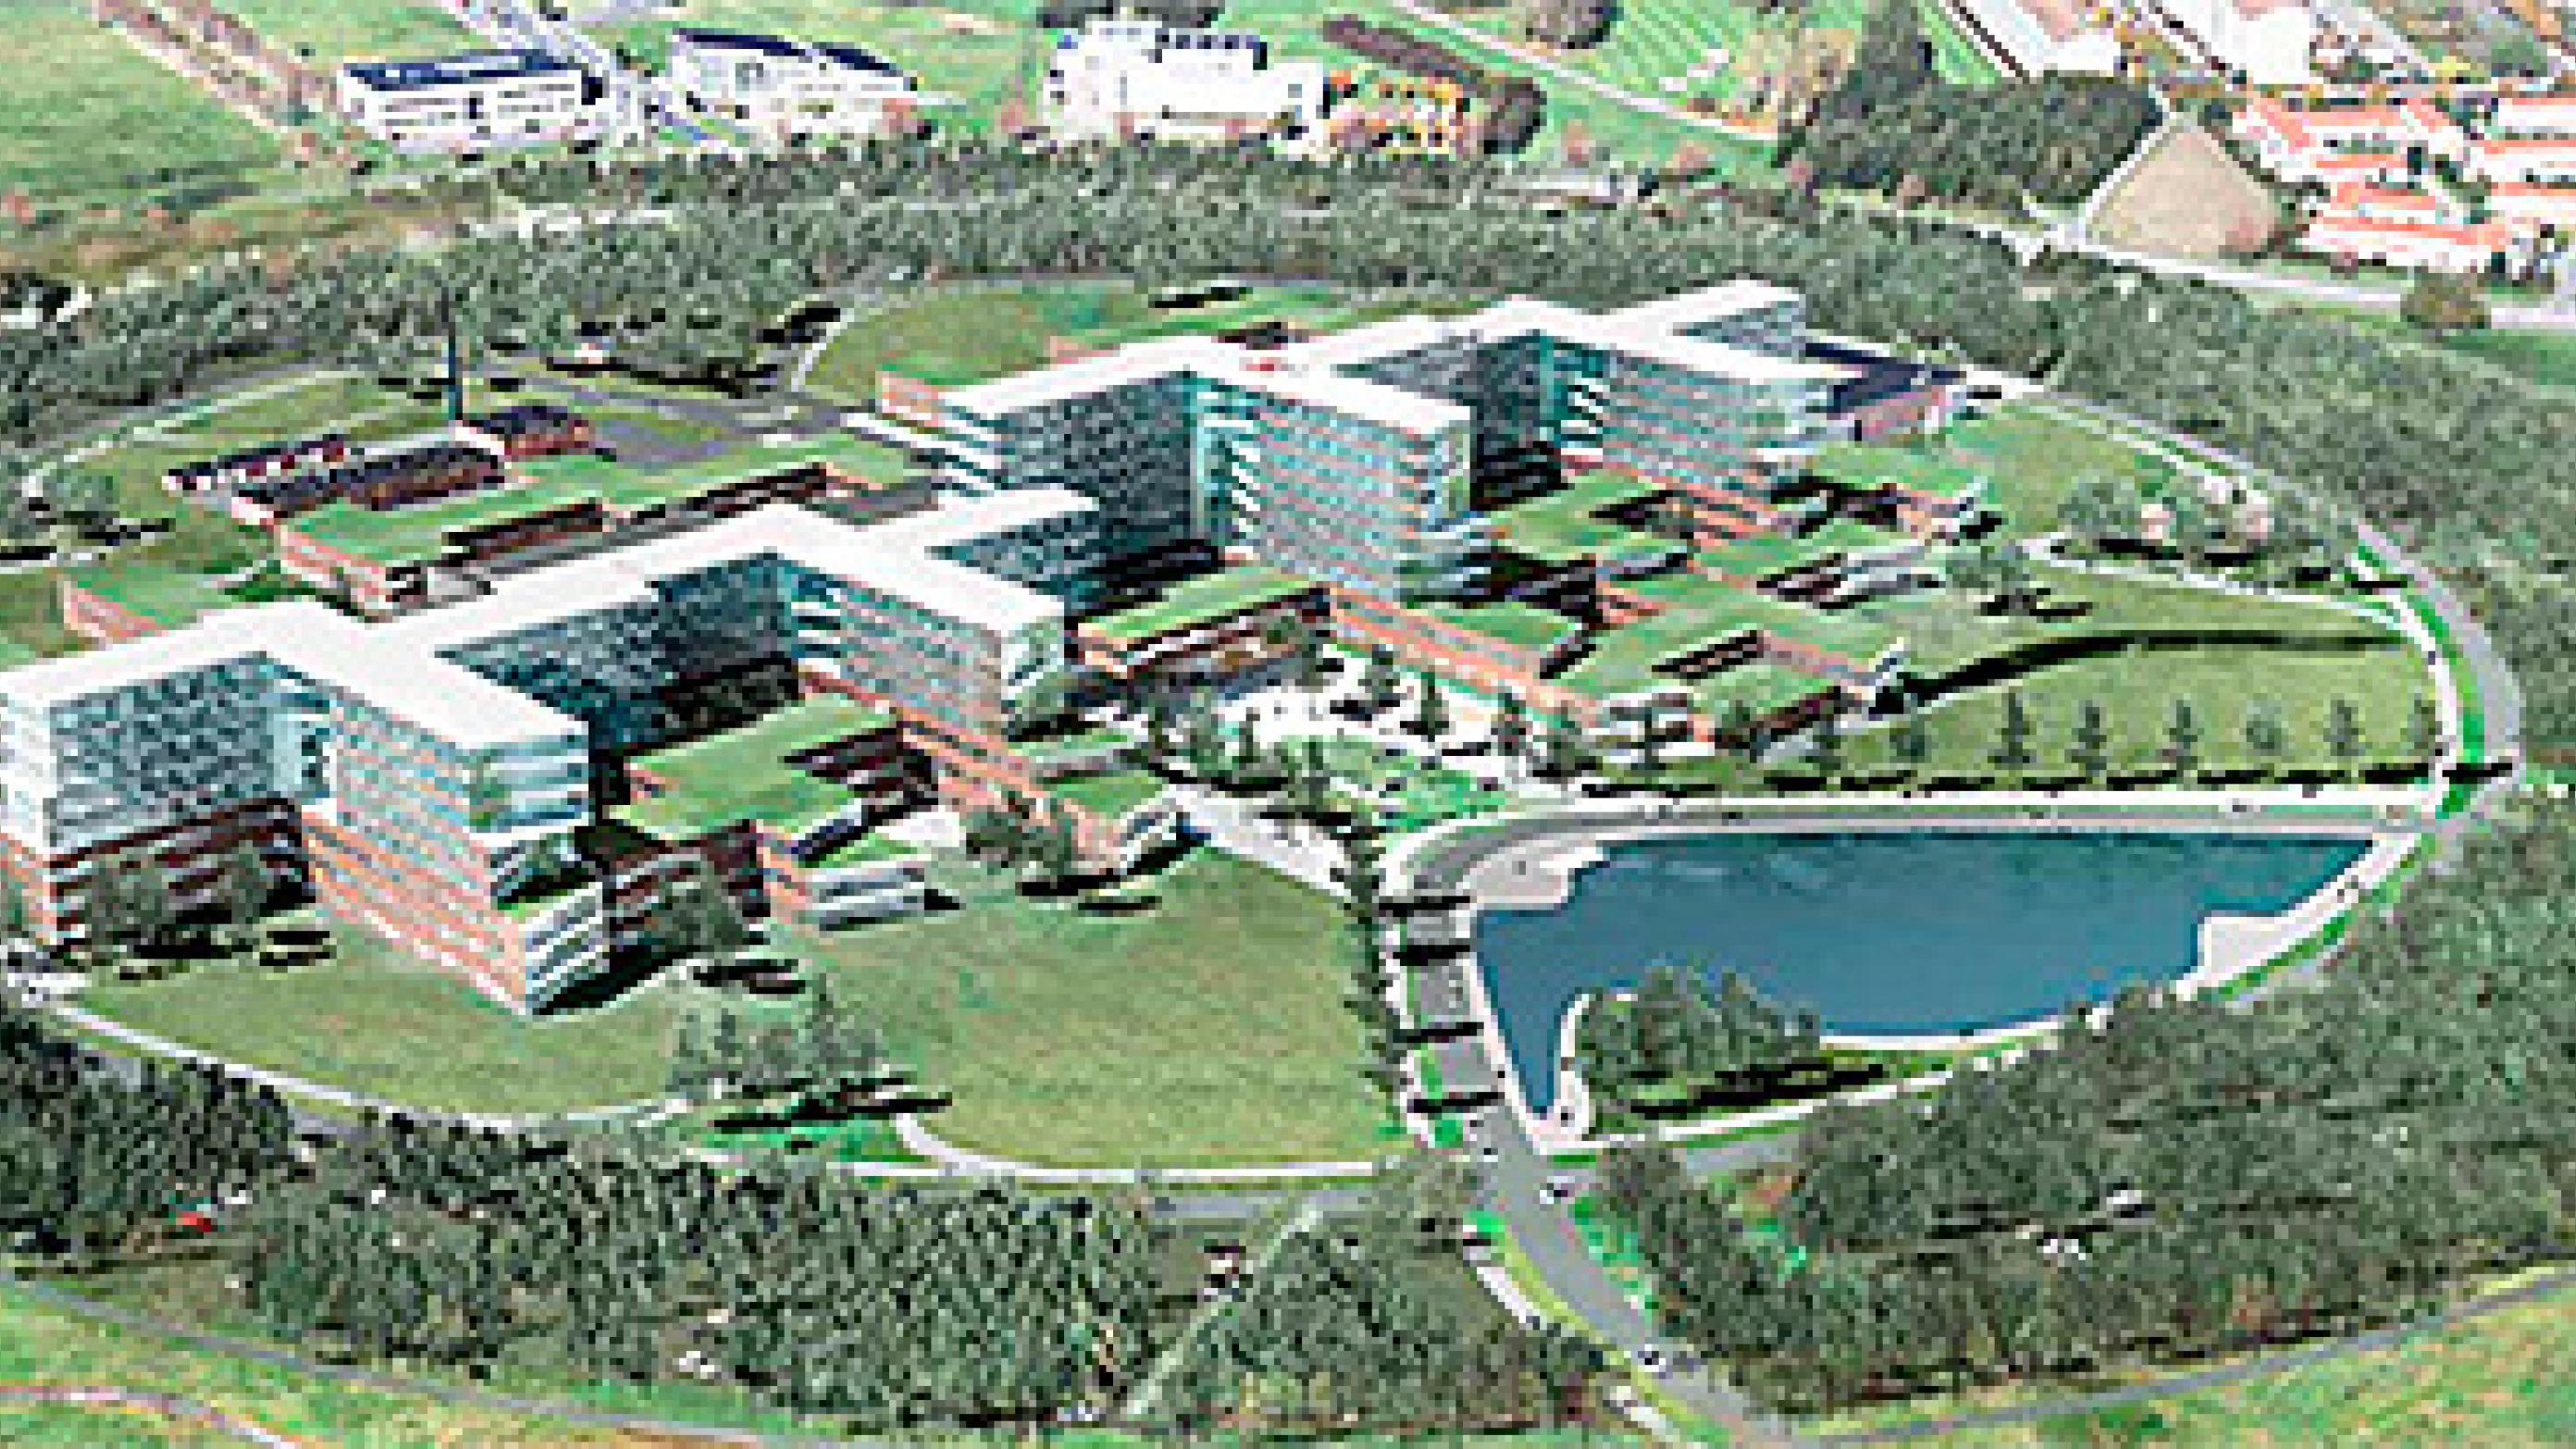 Det nye Sjællands Universitetshospital, Køge, når det vil stå færdigt i 2022. Foto: Region Sjælland.